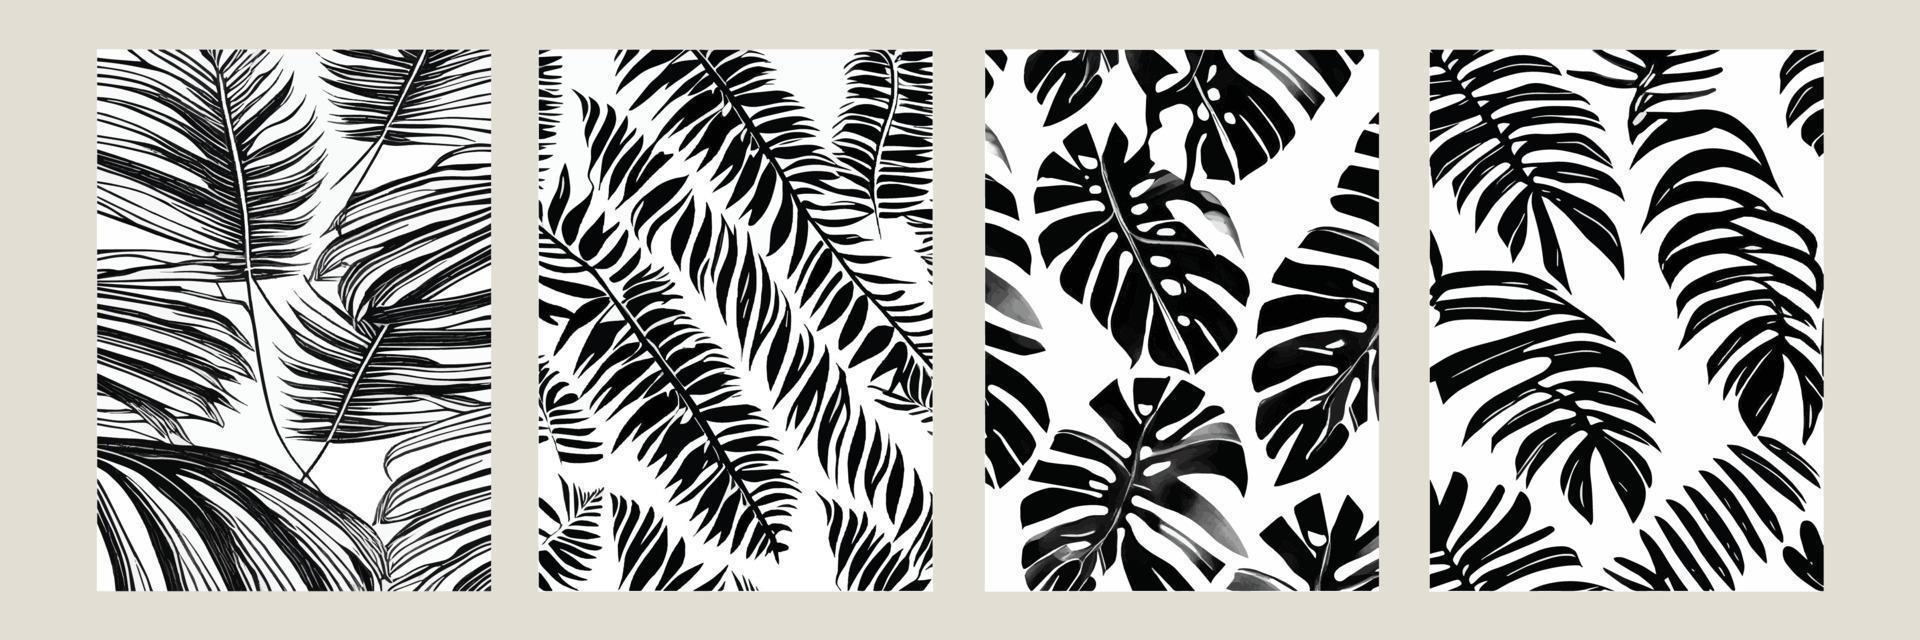 définir des feuilles exotiques motif transparent noir blanc. arrière-plan décoratif vectoriel abstrait élégant. feuilles de palmier tropical, motif floral vectorielle continue de feuille de jungle. papier peint de style tropical grunge.